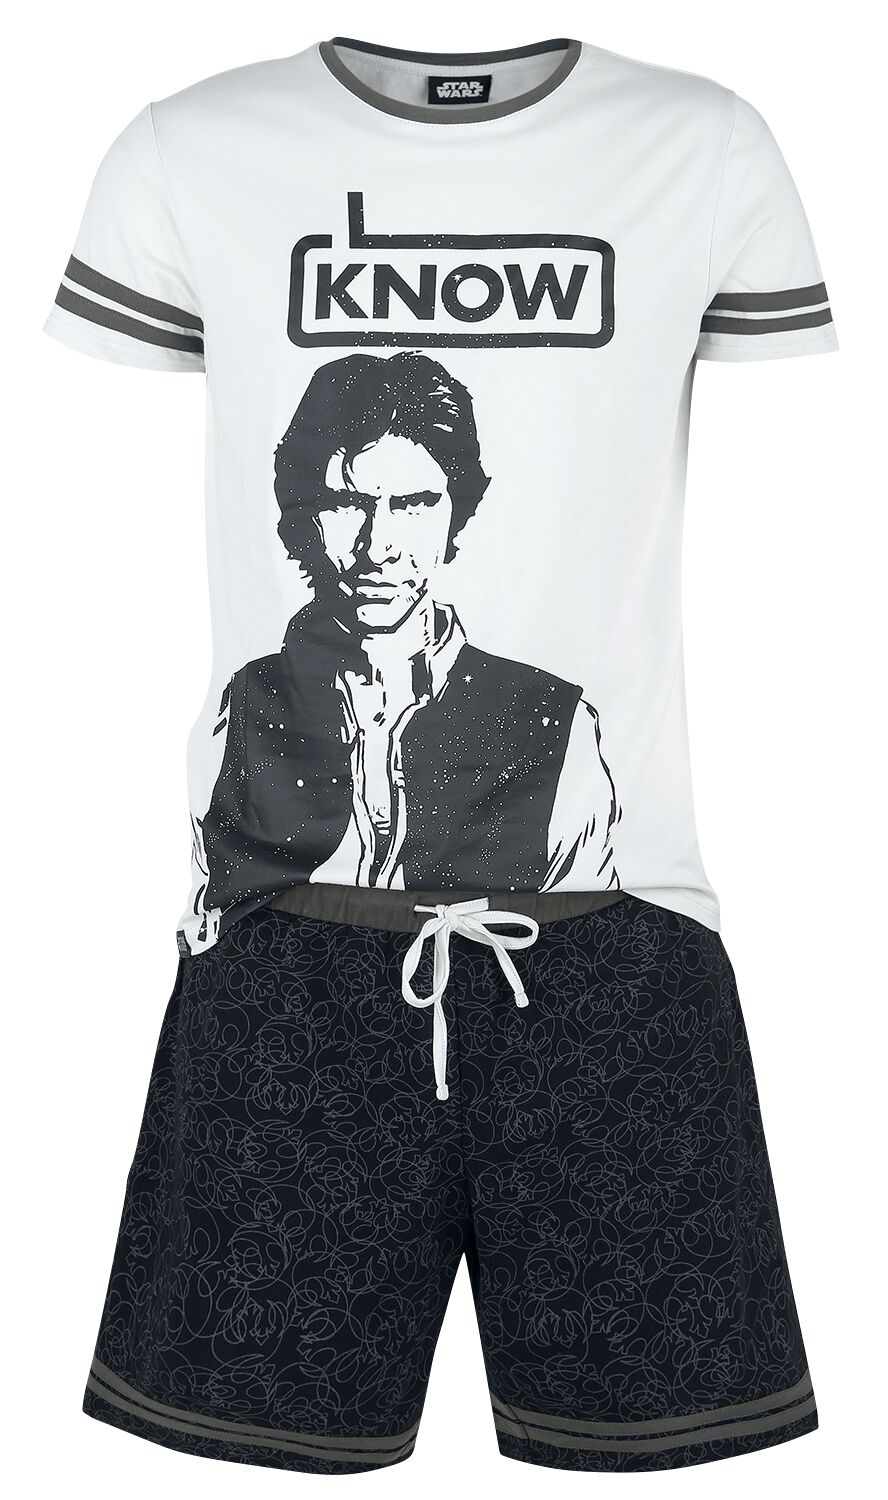 Star Wars Schlafanzug - Han Solo - I Know - S bis XXL - für Männer - Größe M - grau/schwarz  - EMP exklusives Merchandise!